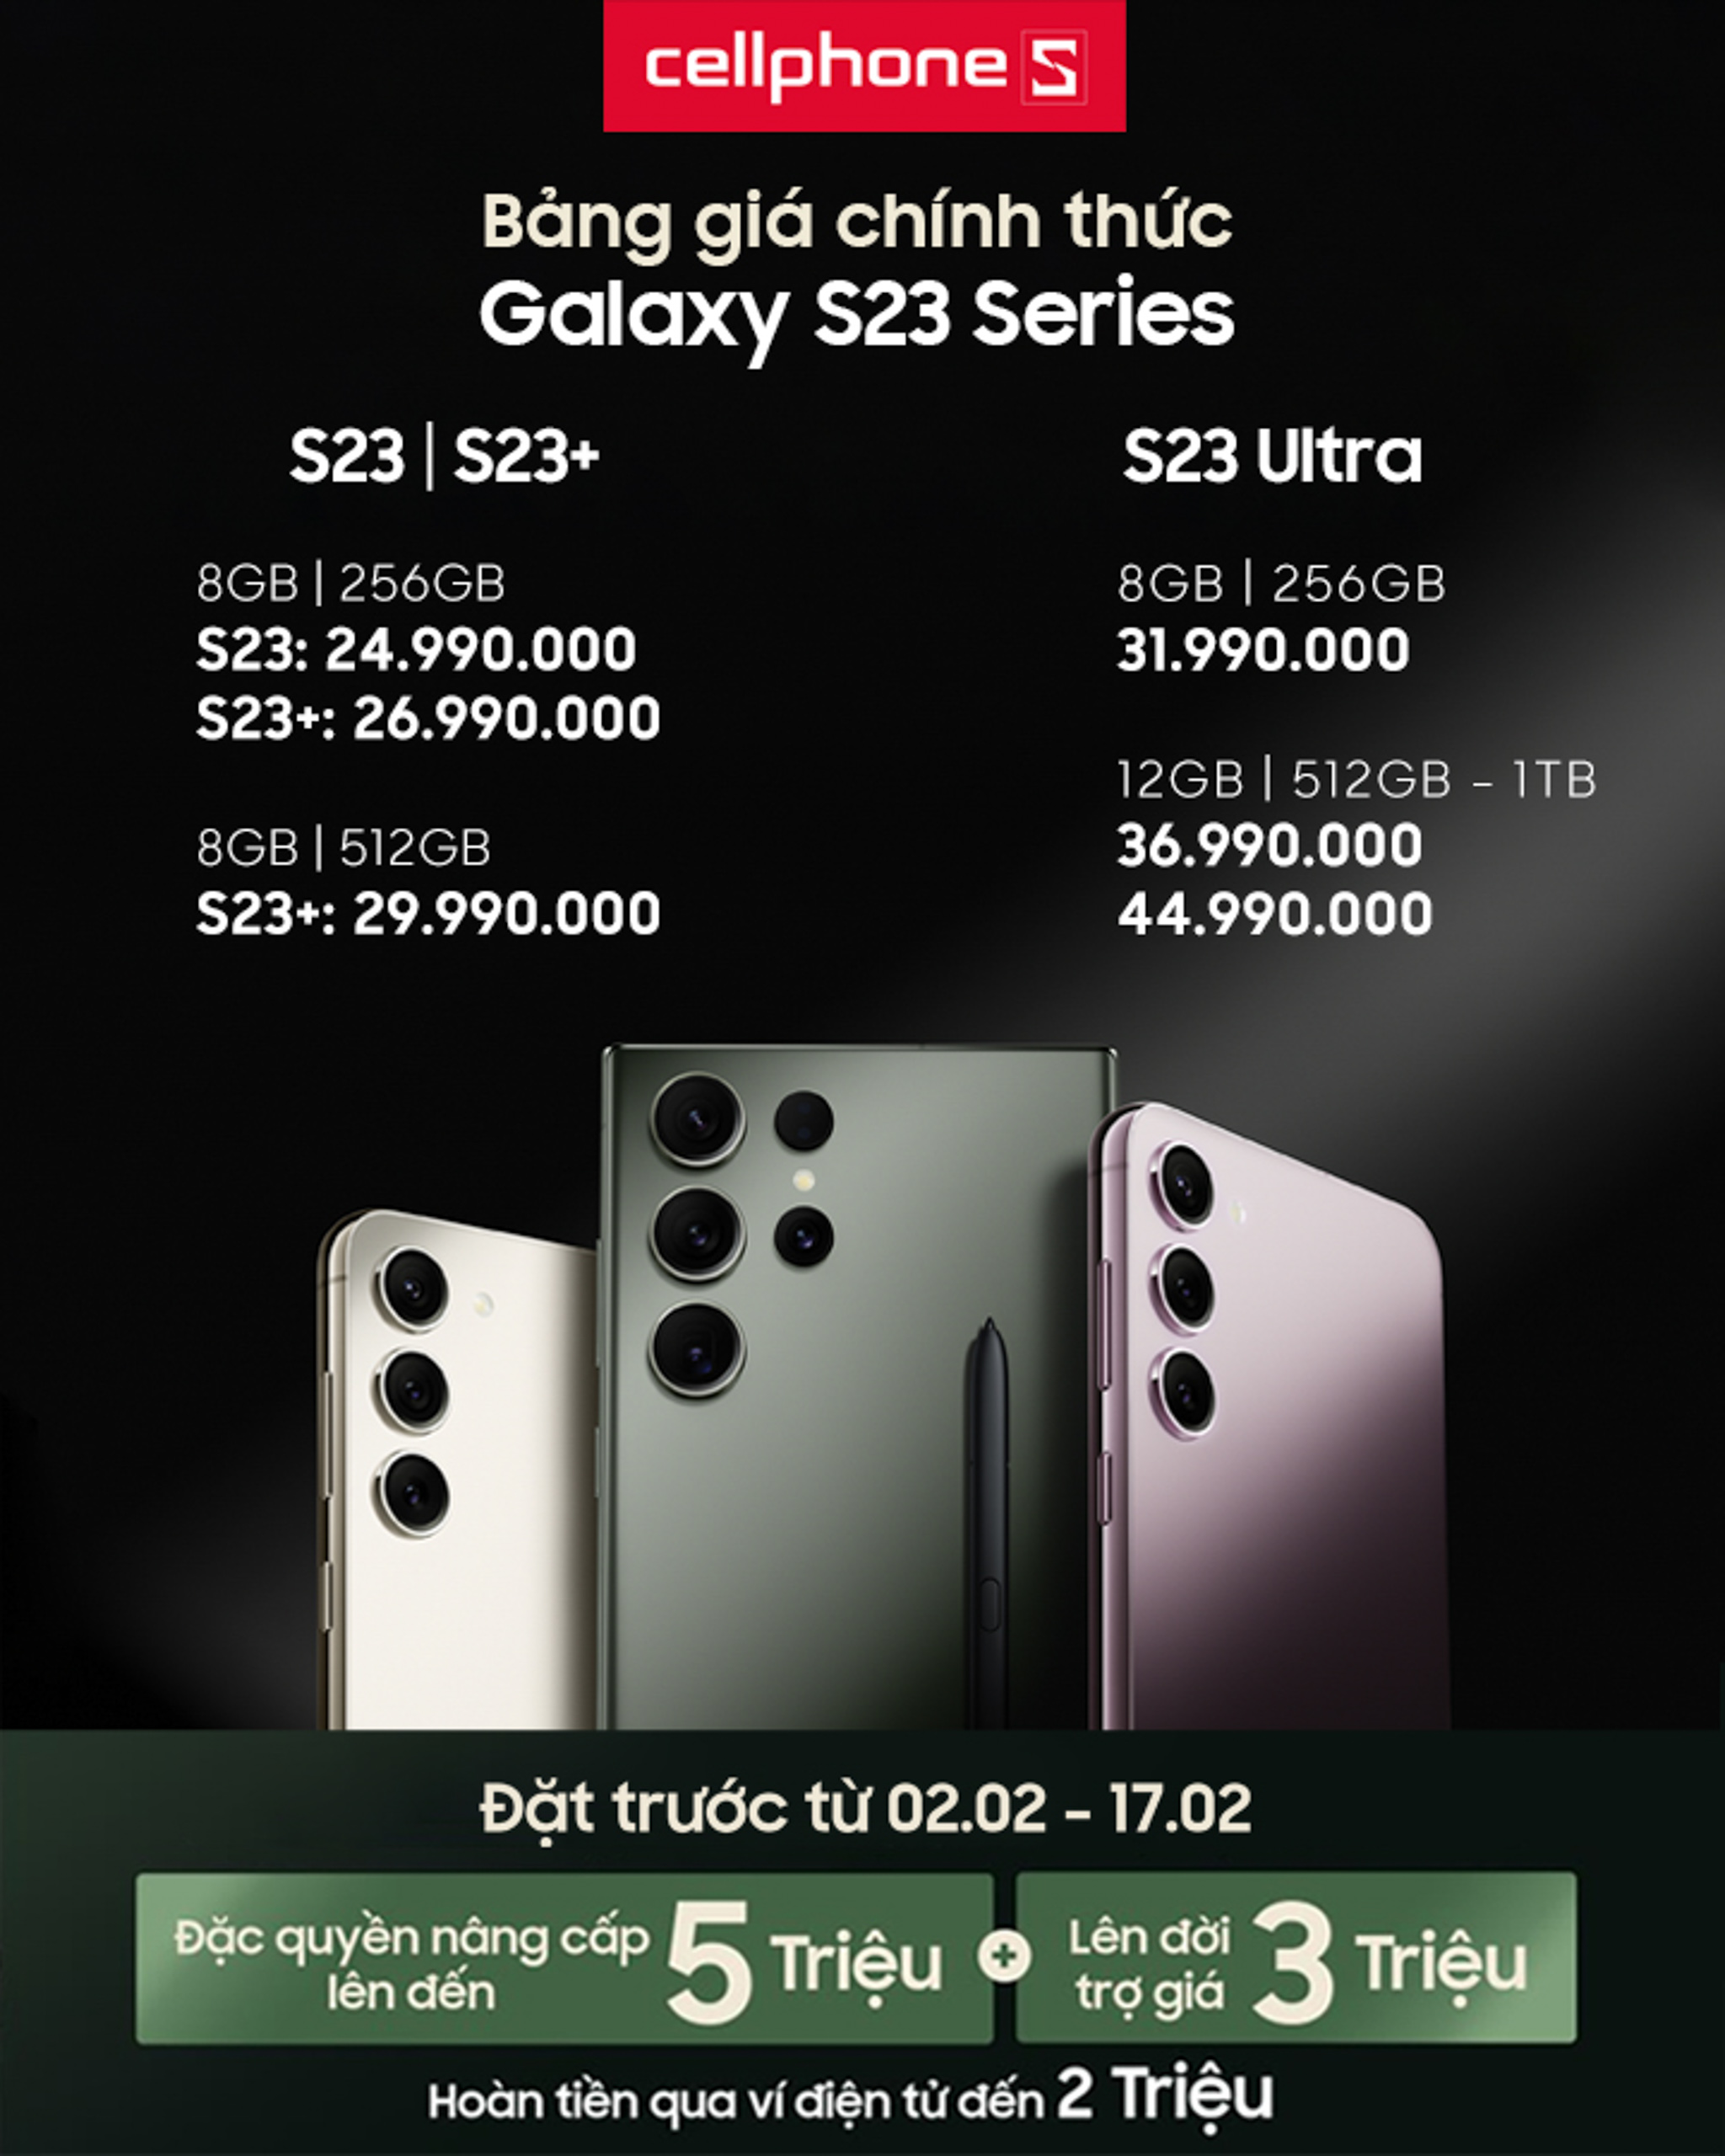 Galaxy S23 series ra mắt, tiết kiệm đến 10 triệu khi đặt trước